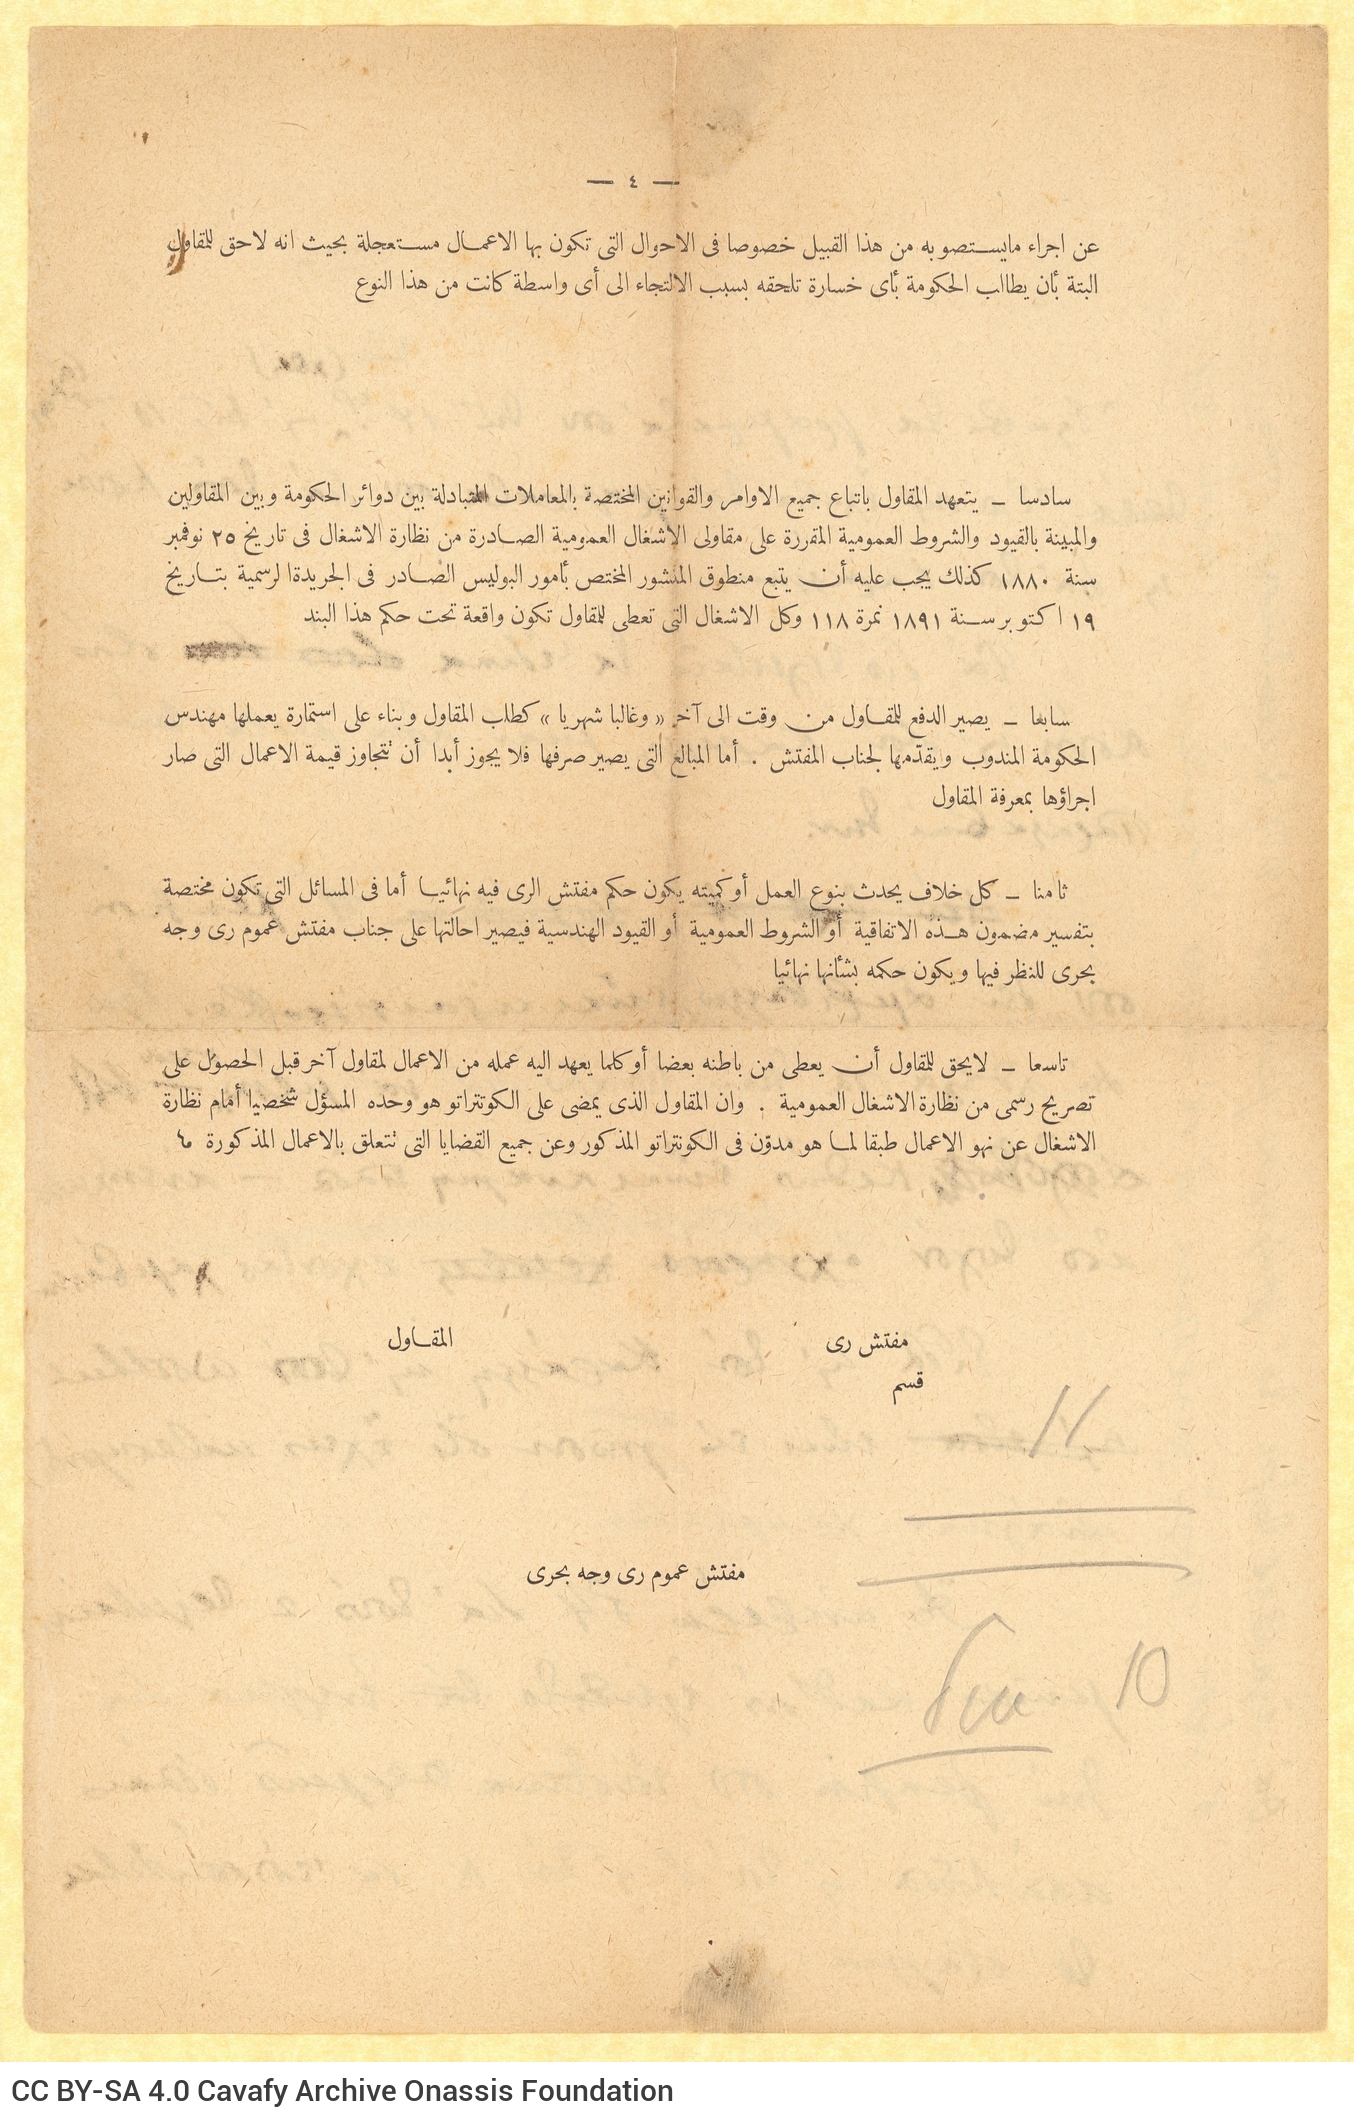 Χειρόγραφο σχέδιο επιστολής του Καβάφη στη μία όψη φύλλου. Διαγραφέ�